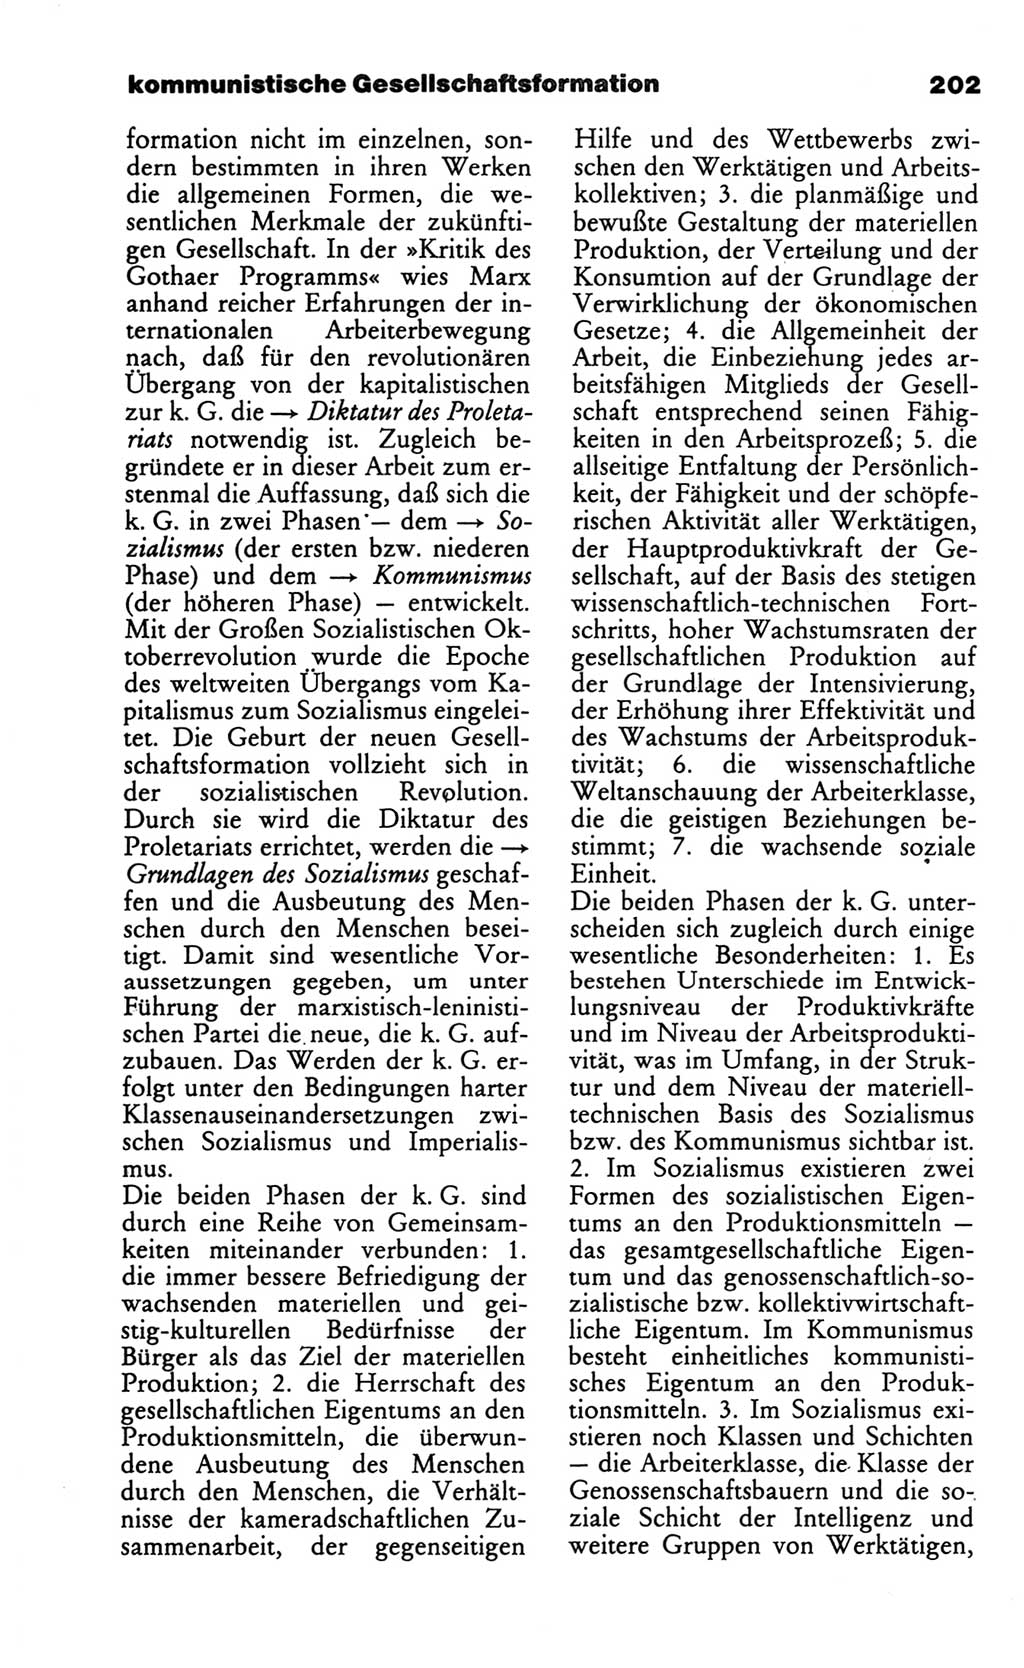 Wörterbuch des wissenschaftlichen Kommunismus [Deutsche Demokratische Republik (DDR)] 1986, Seite 202 (Wb. wiss. Komm. DDR 1986, S. 202)